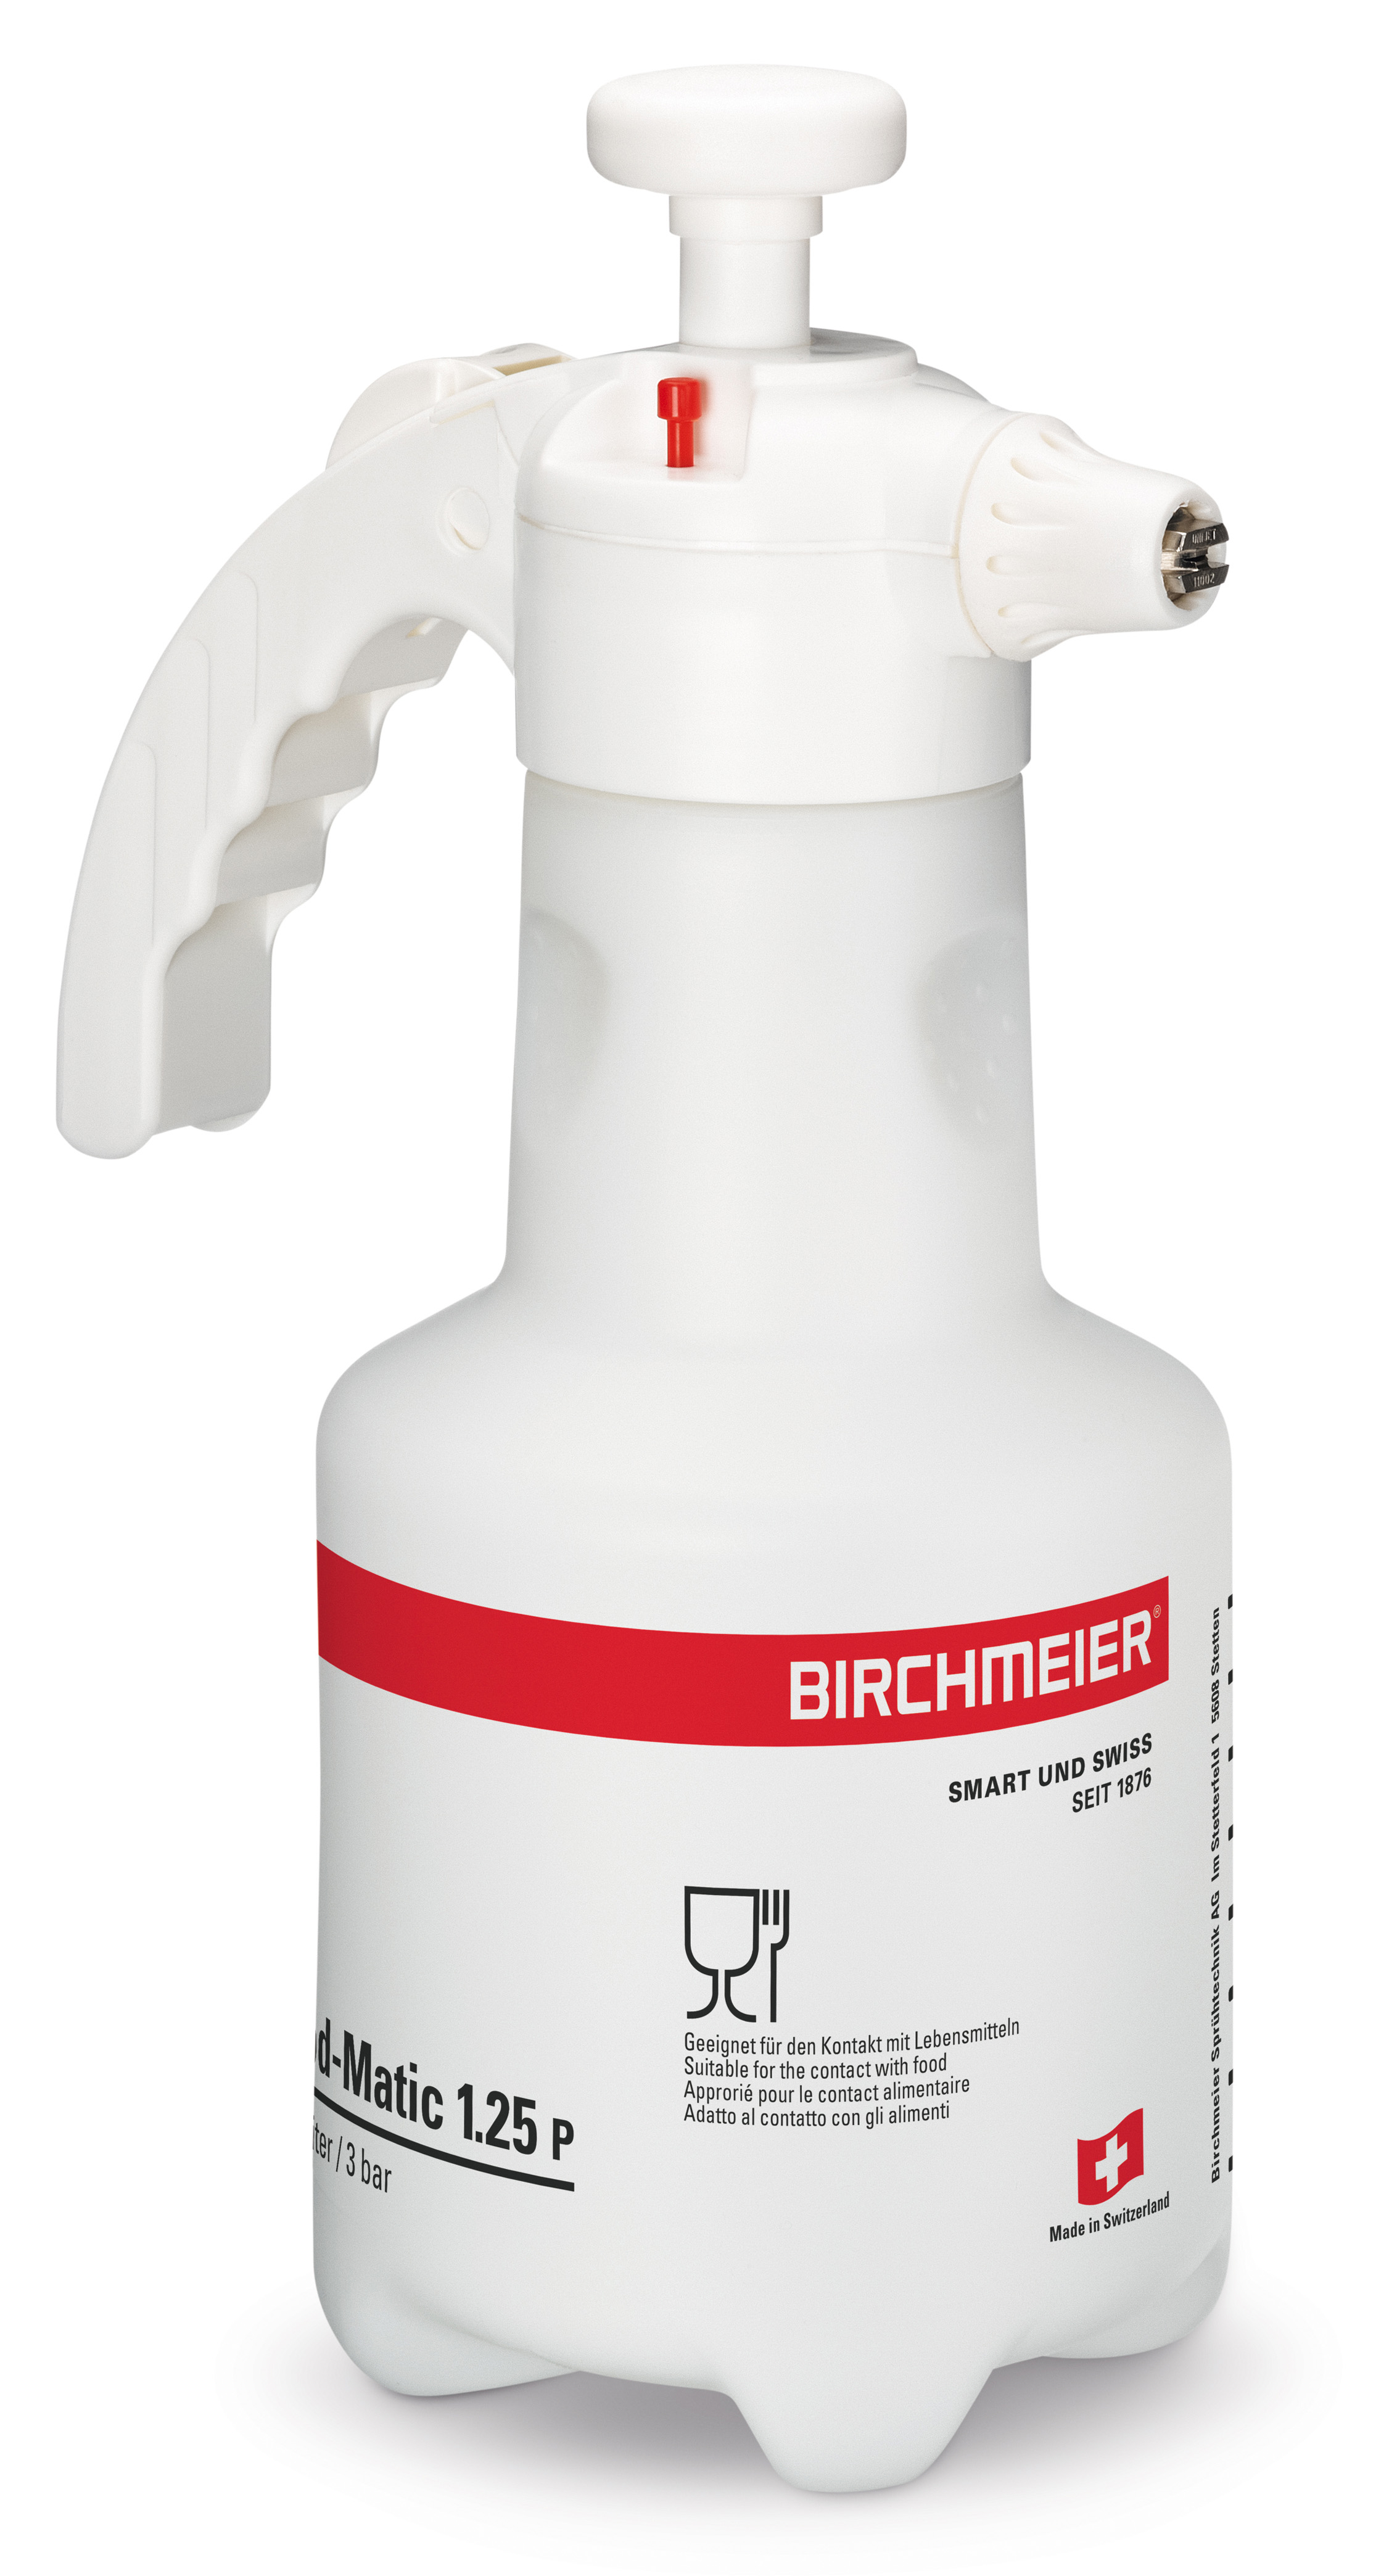 Opryskiwacz ciśnieniowy, przeznaczony do kontaktu z żywnością, dysza płaskostrumieniowa, Food-Matic 1.25 P firmy Birchmeier